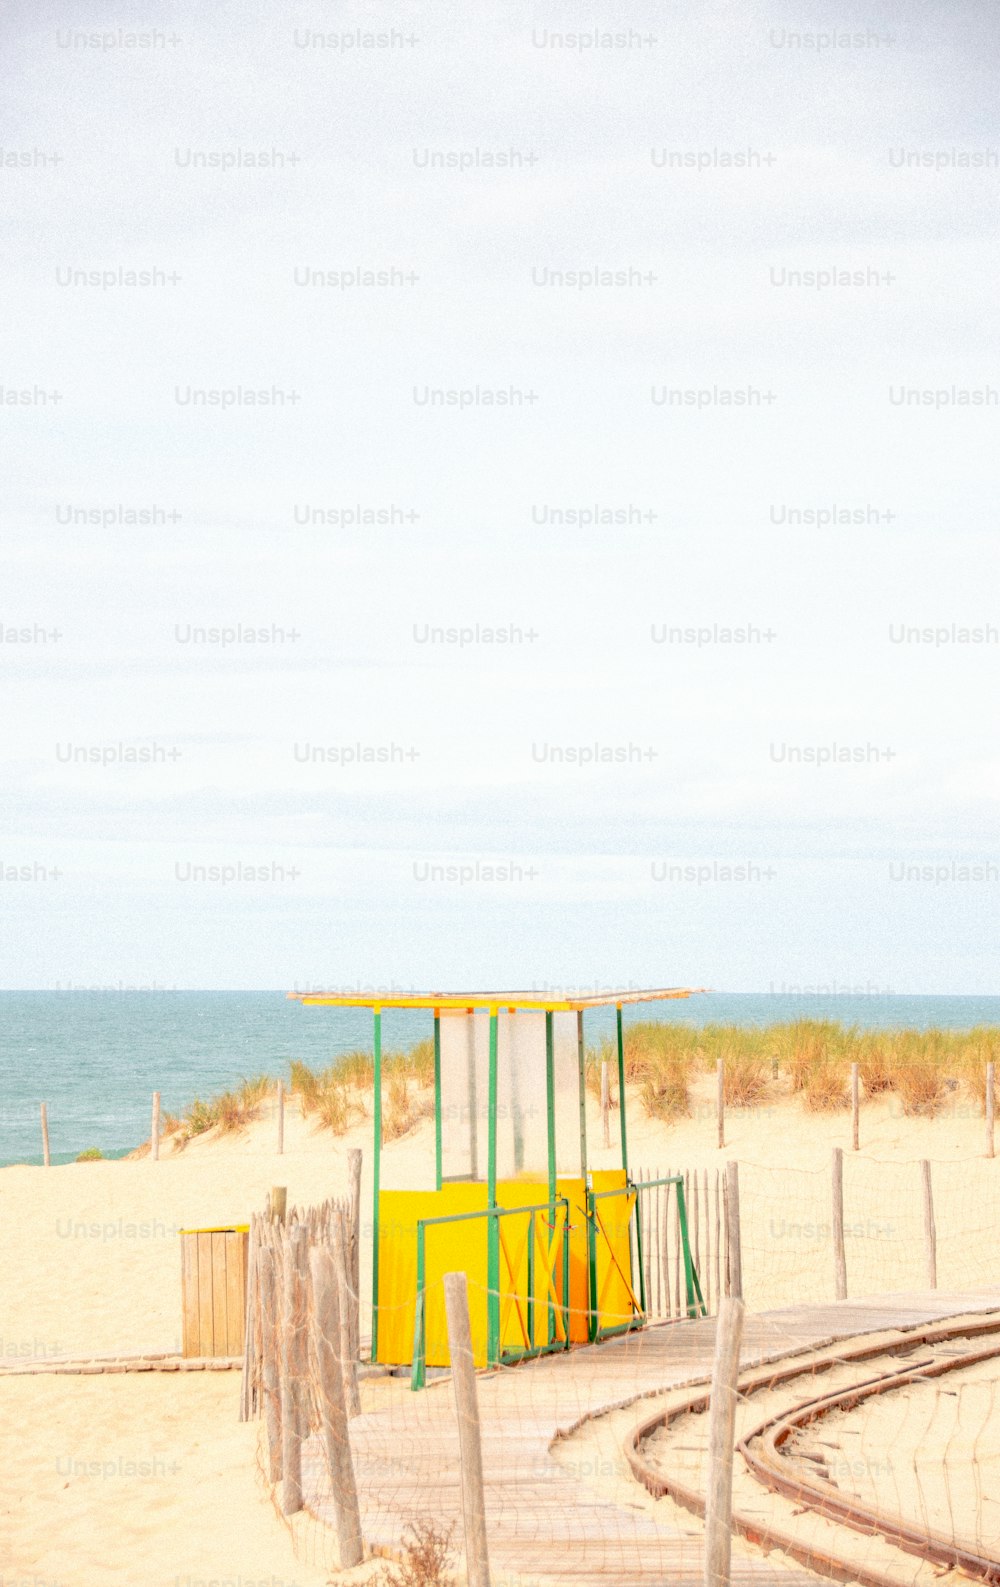 a lifeguard station on a beach near the ocean